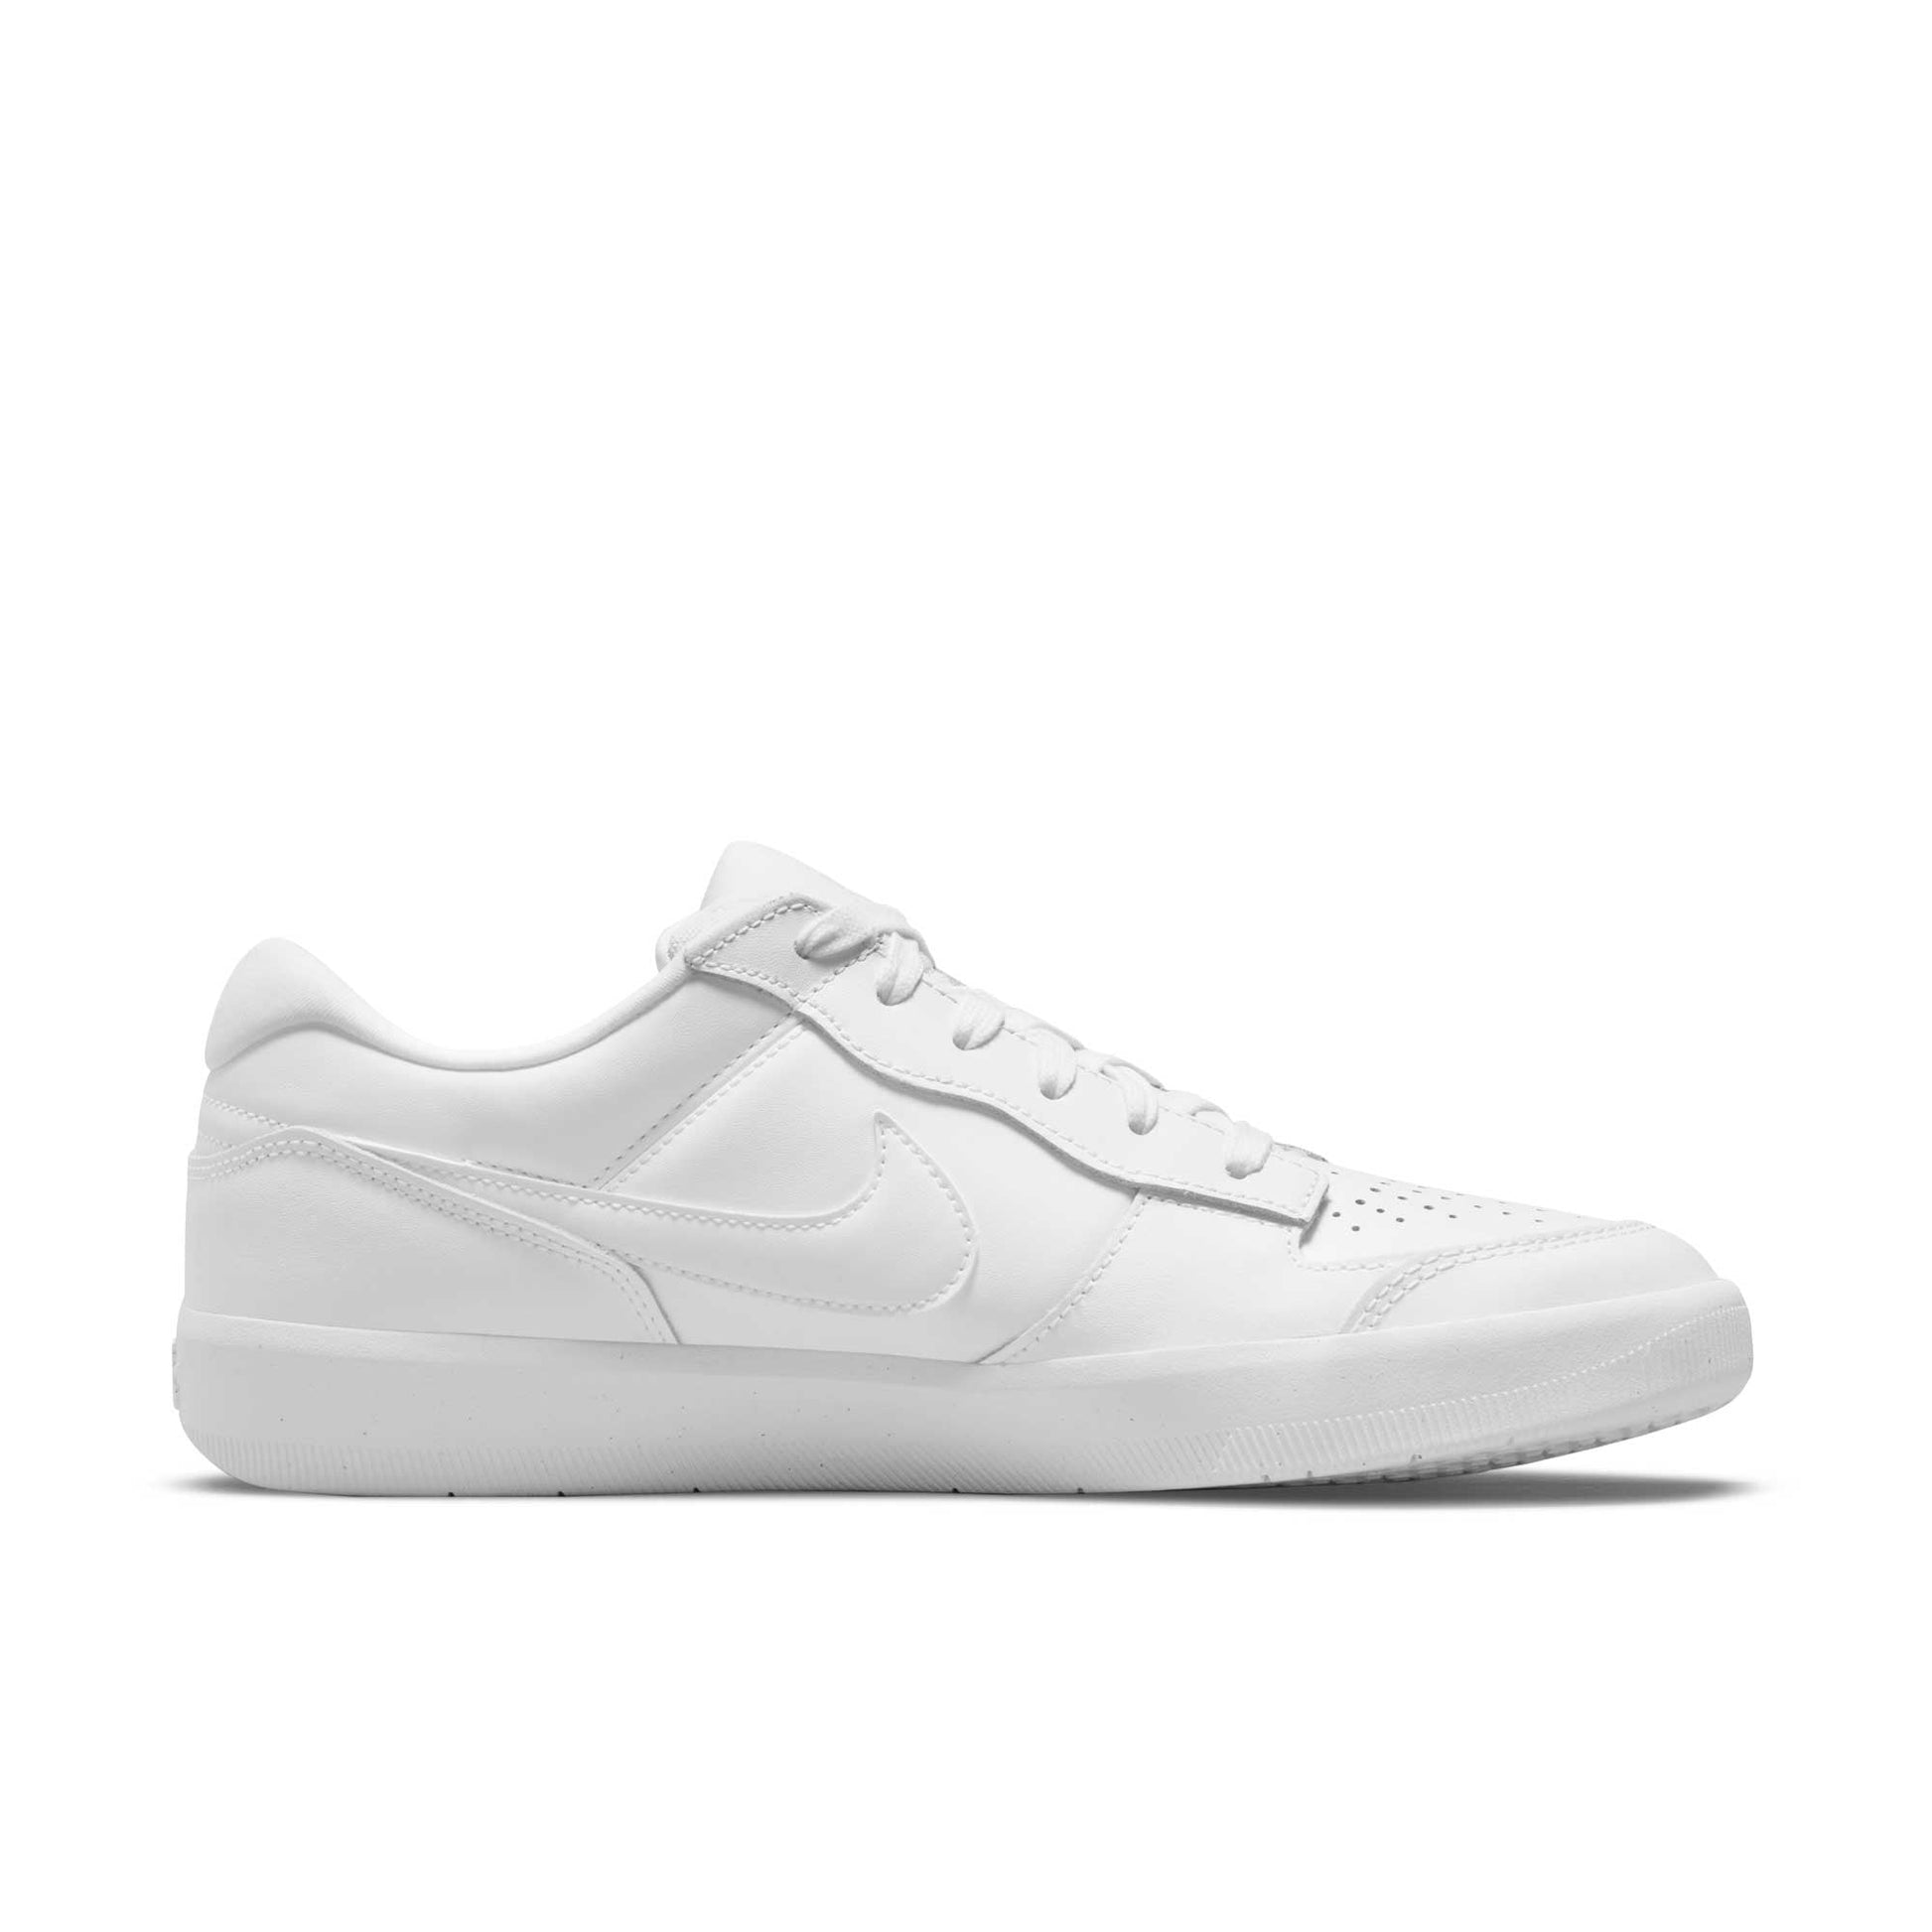 Nike SB Force 58 Premium, white/white-white-white - Tiki Room Skateboards - 7